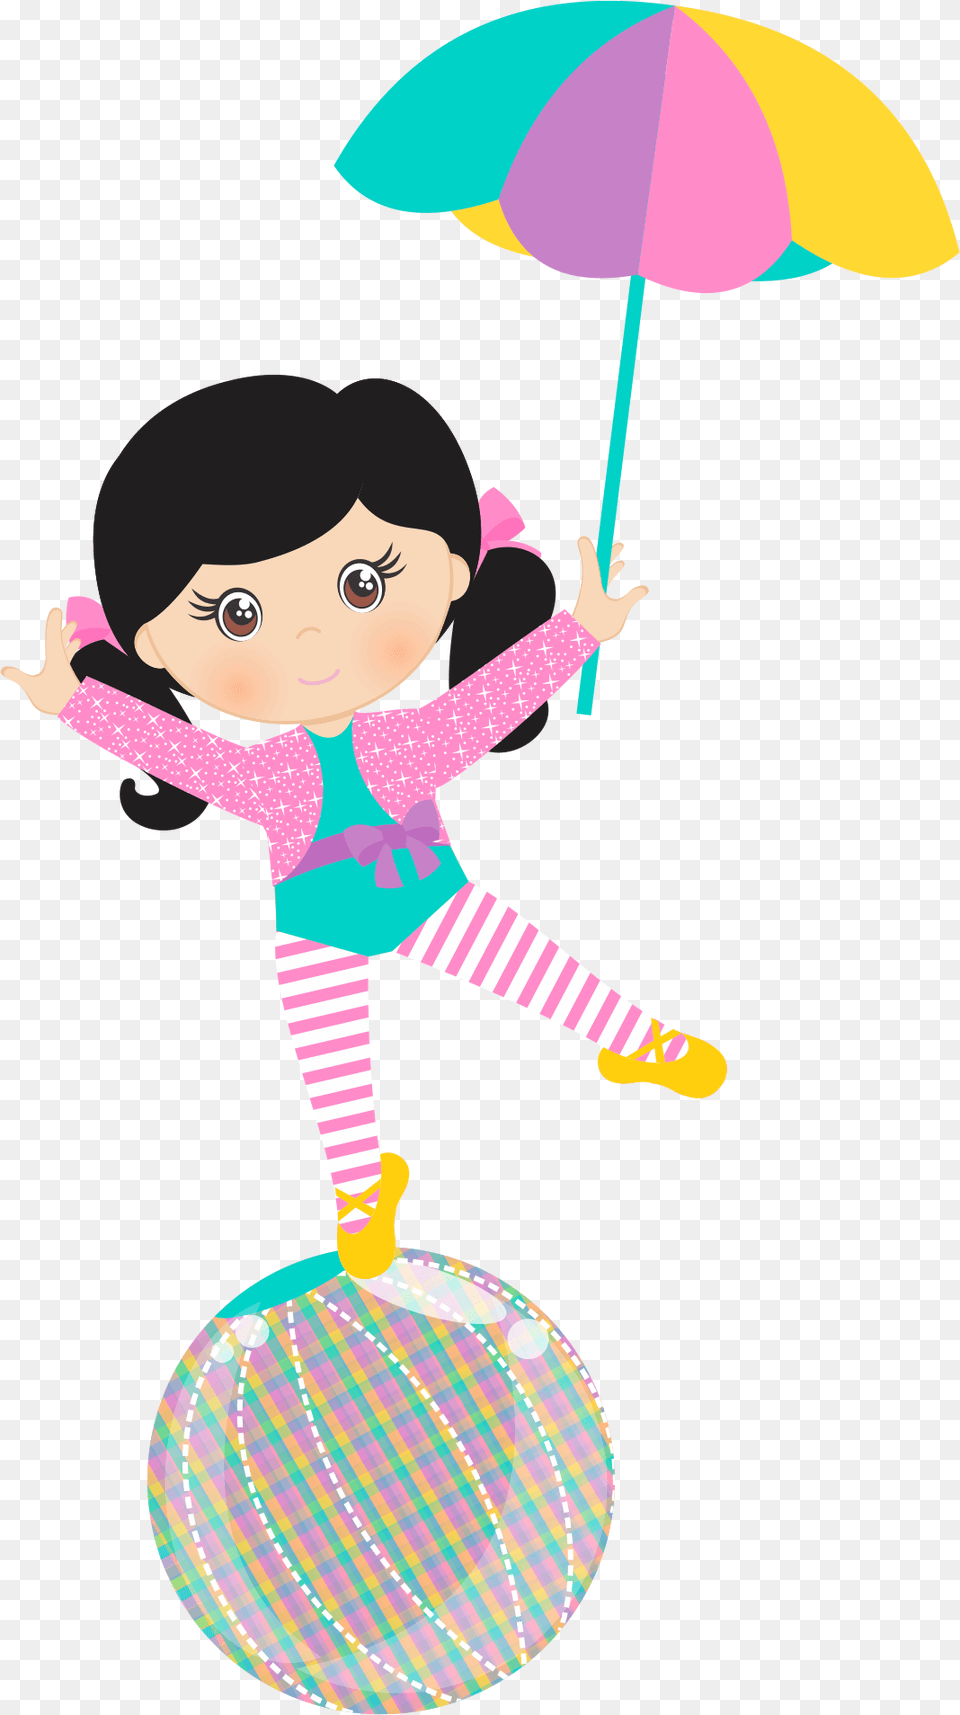 Bailarina De Circo Desenho, Baby, Person, Face, Head Png Image